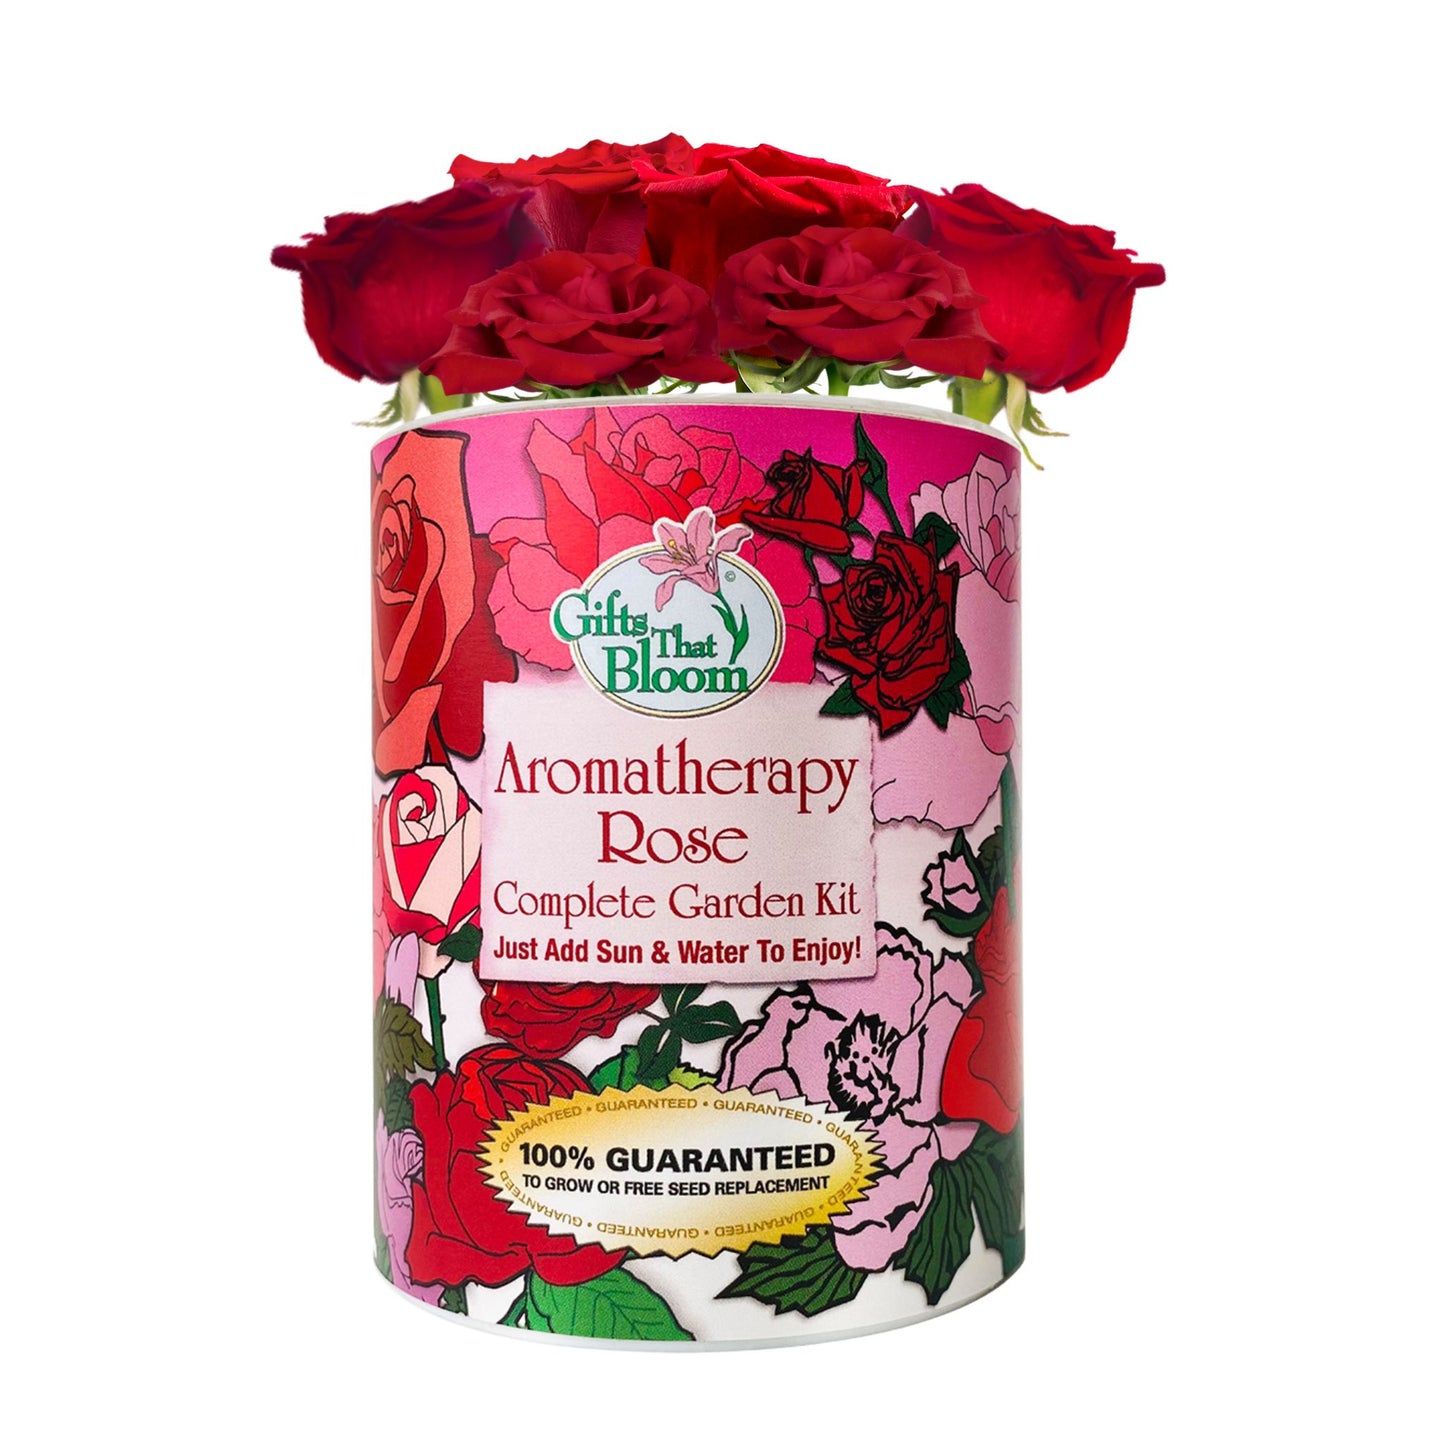 Aromatherapy Rose Garden Grocan